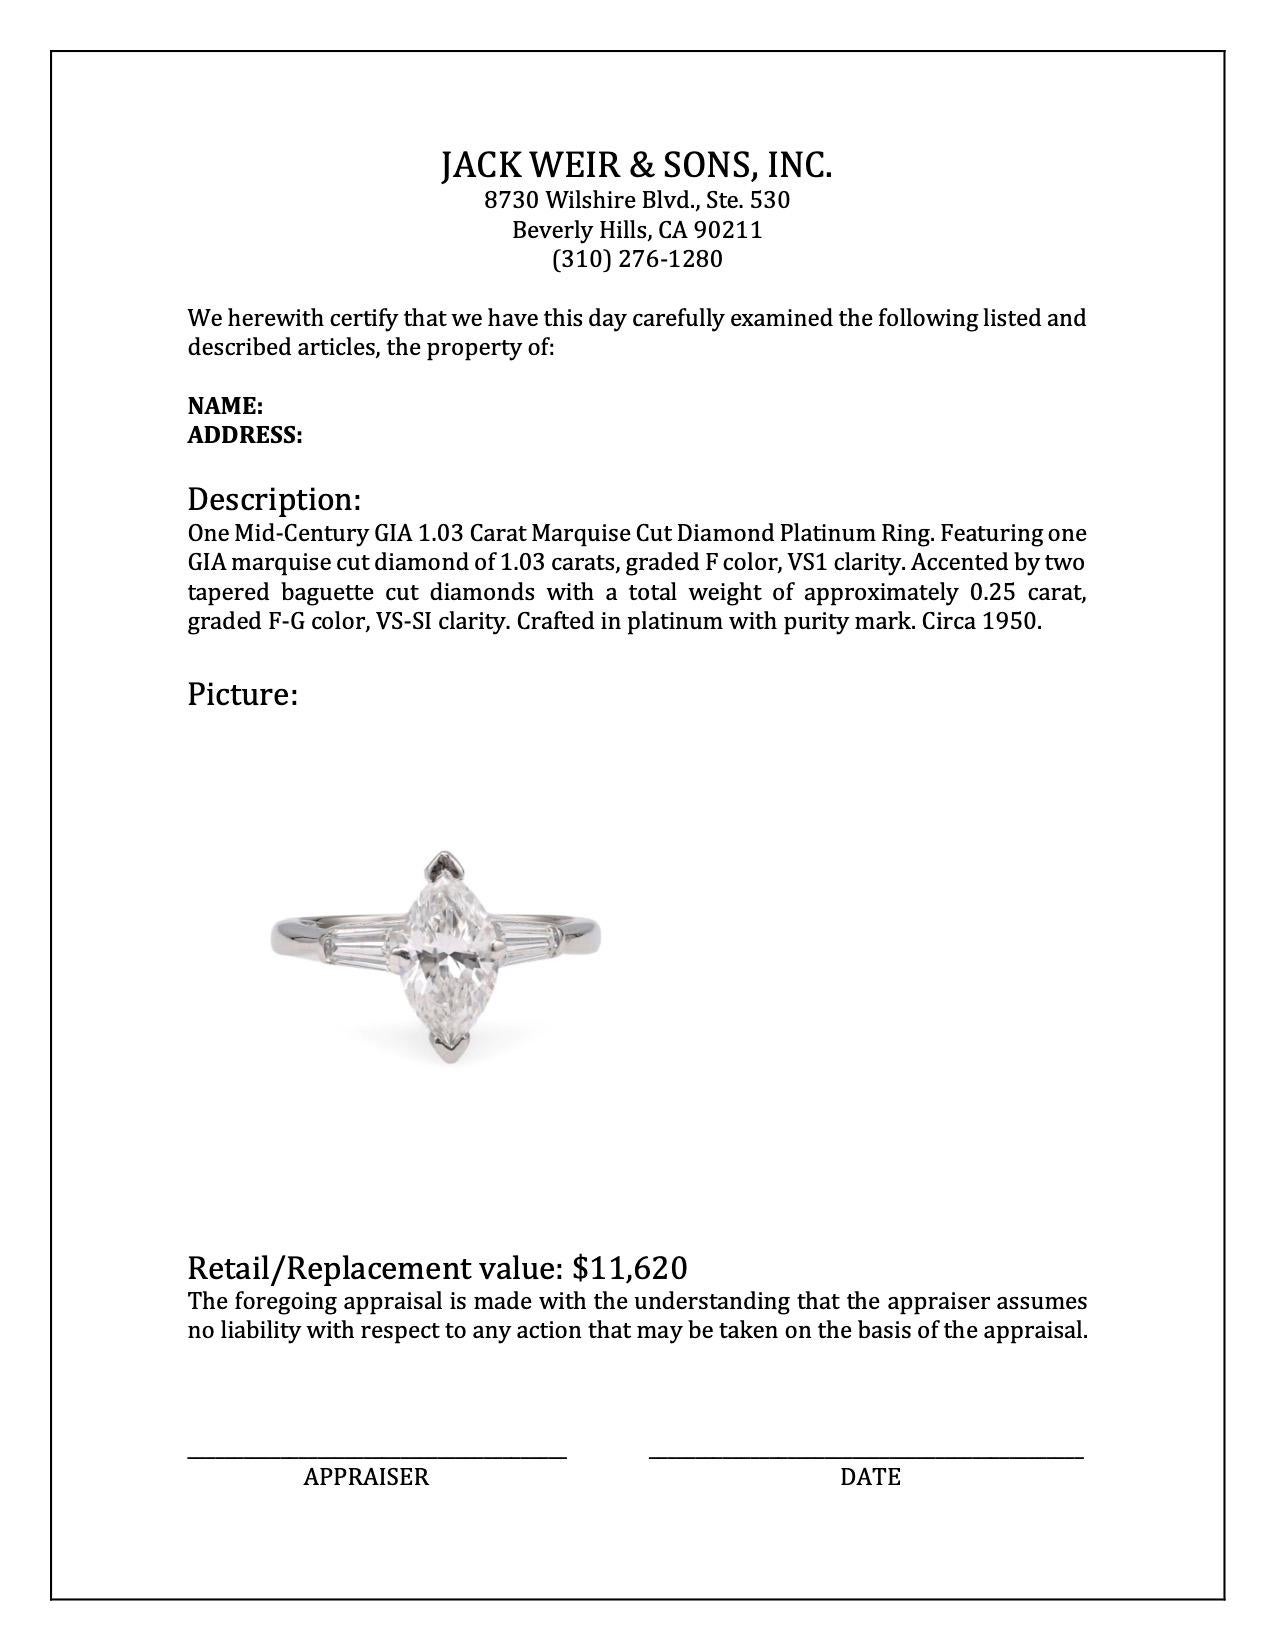 Mid-Century GIA 1.03 Carat Marquise Cut Diamond Platinum Ring For Sale 1